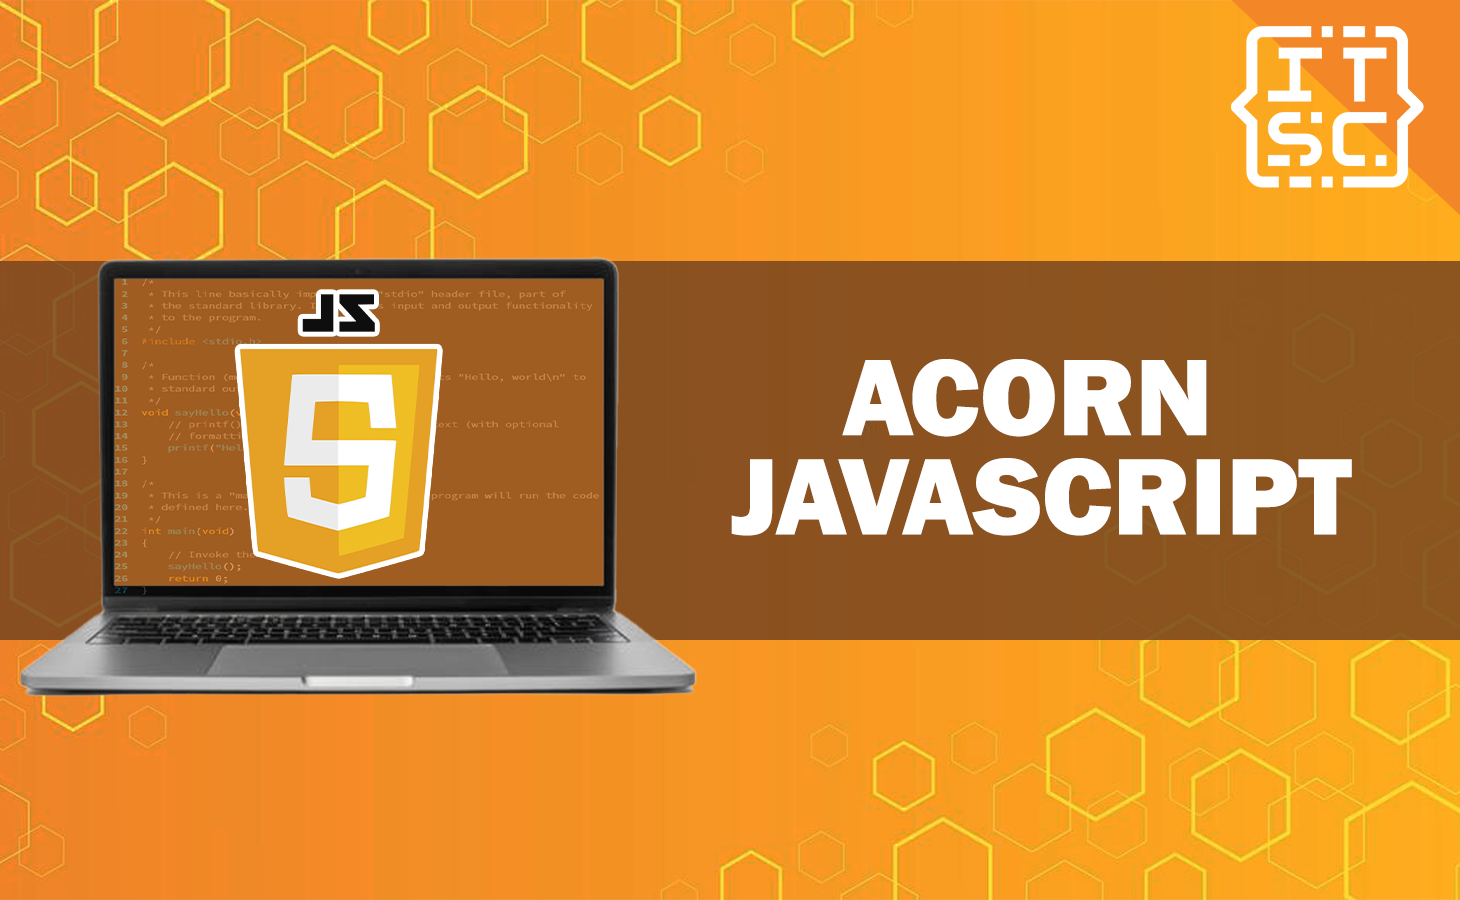 Acorn JavaScript